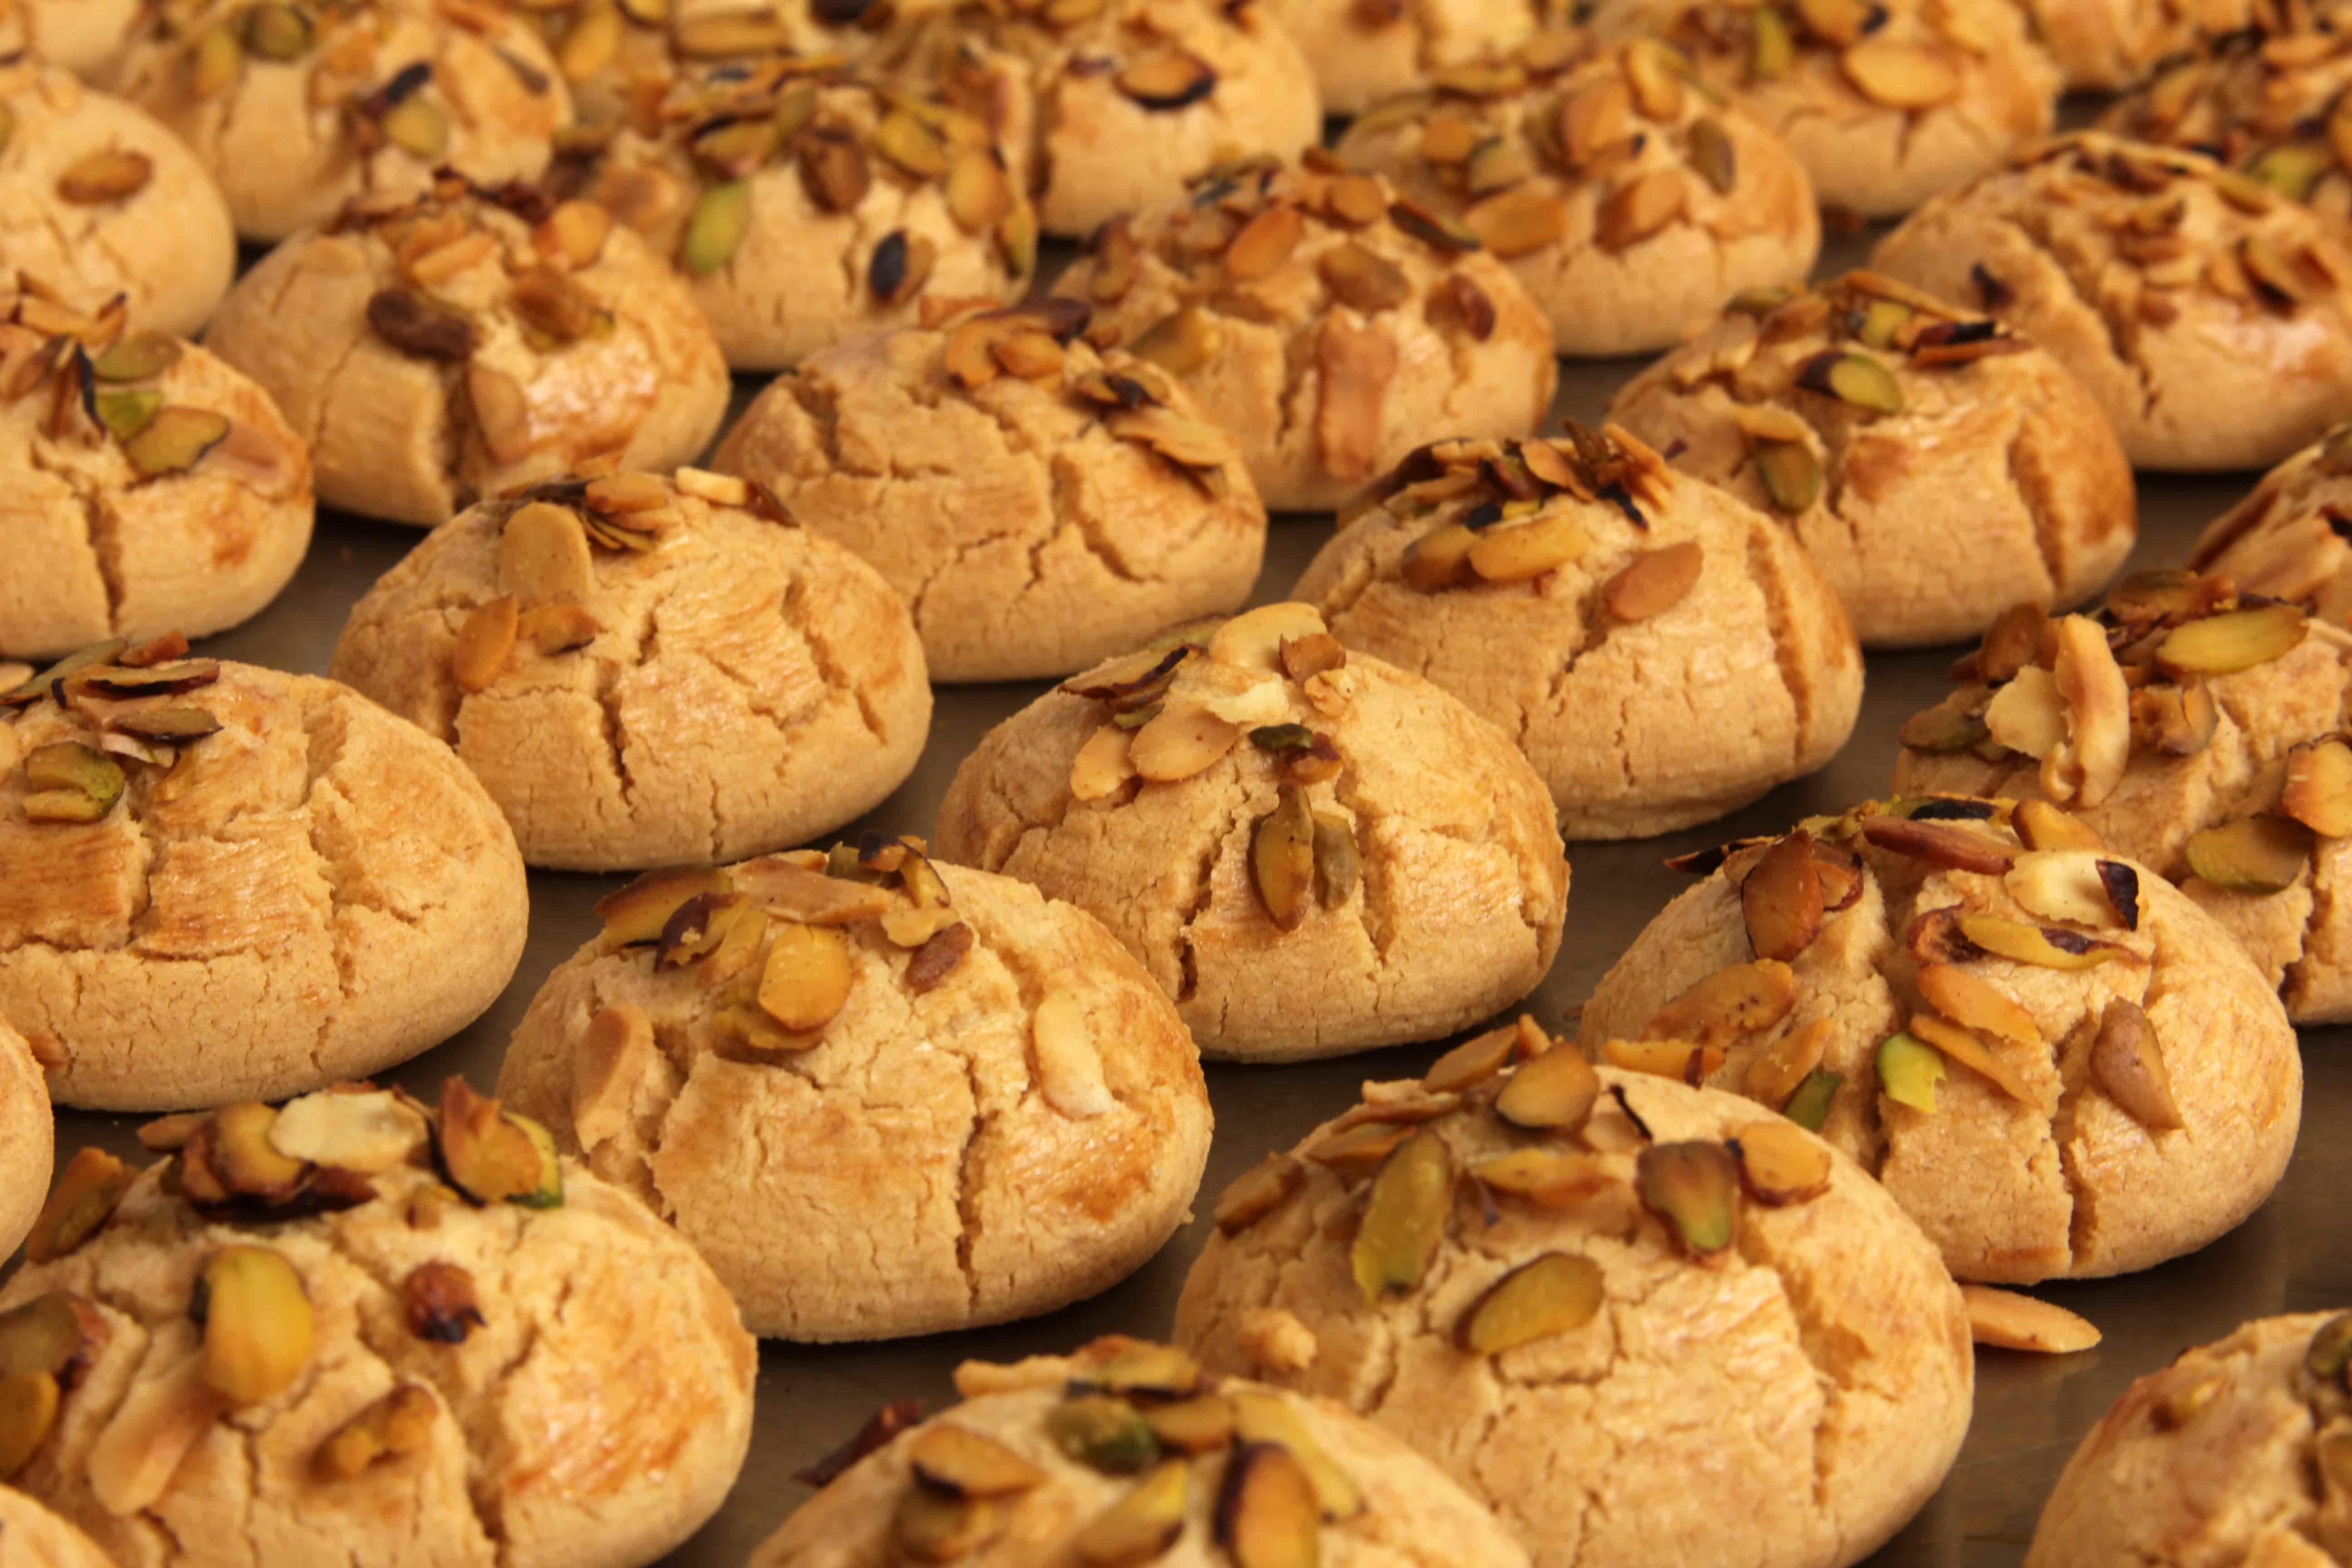 nut-based food innovations